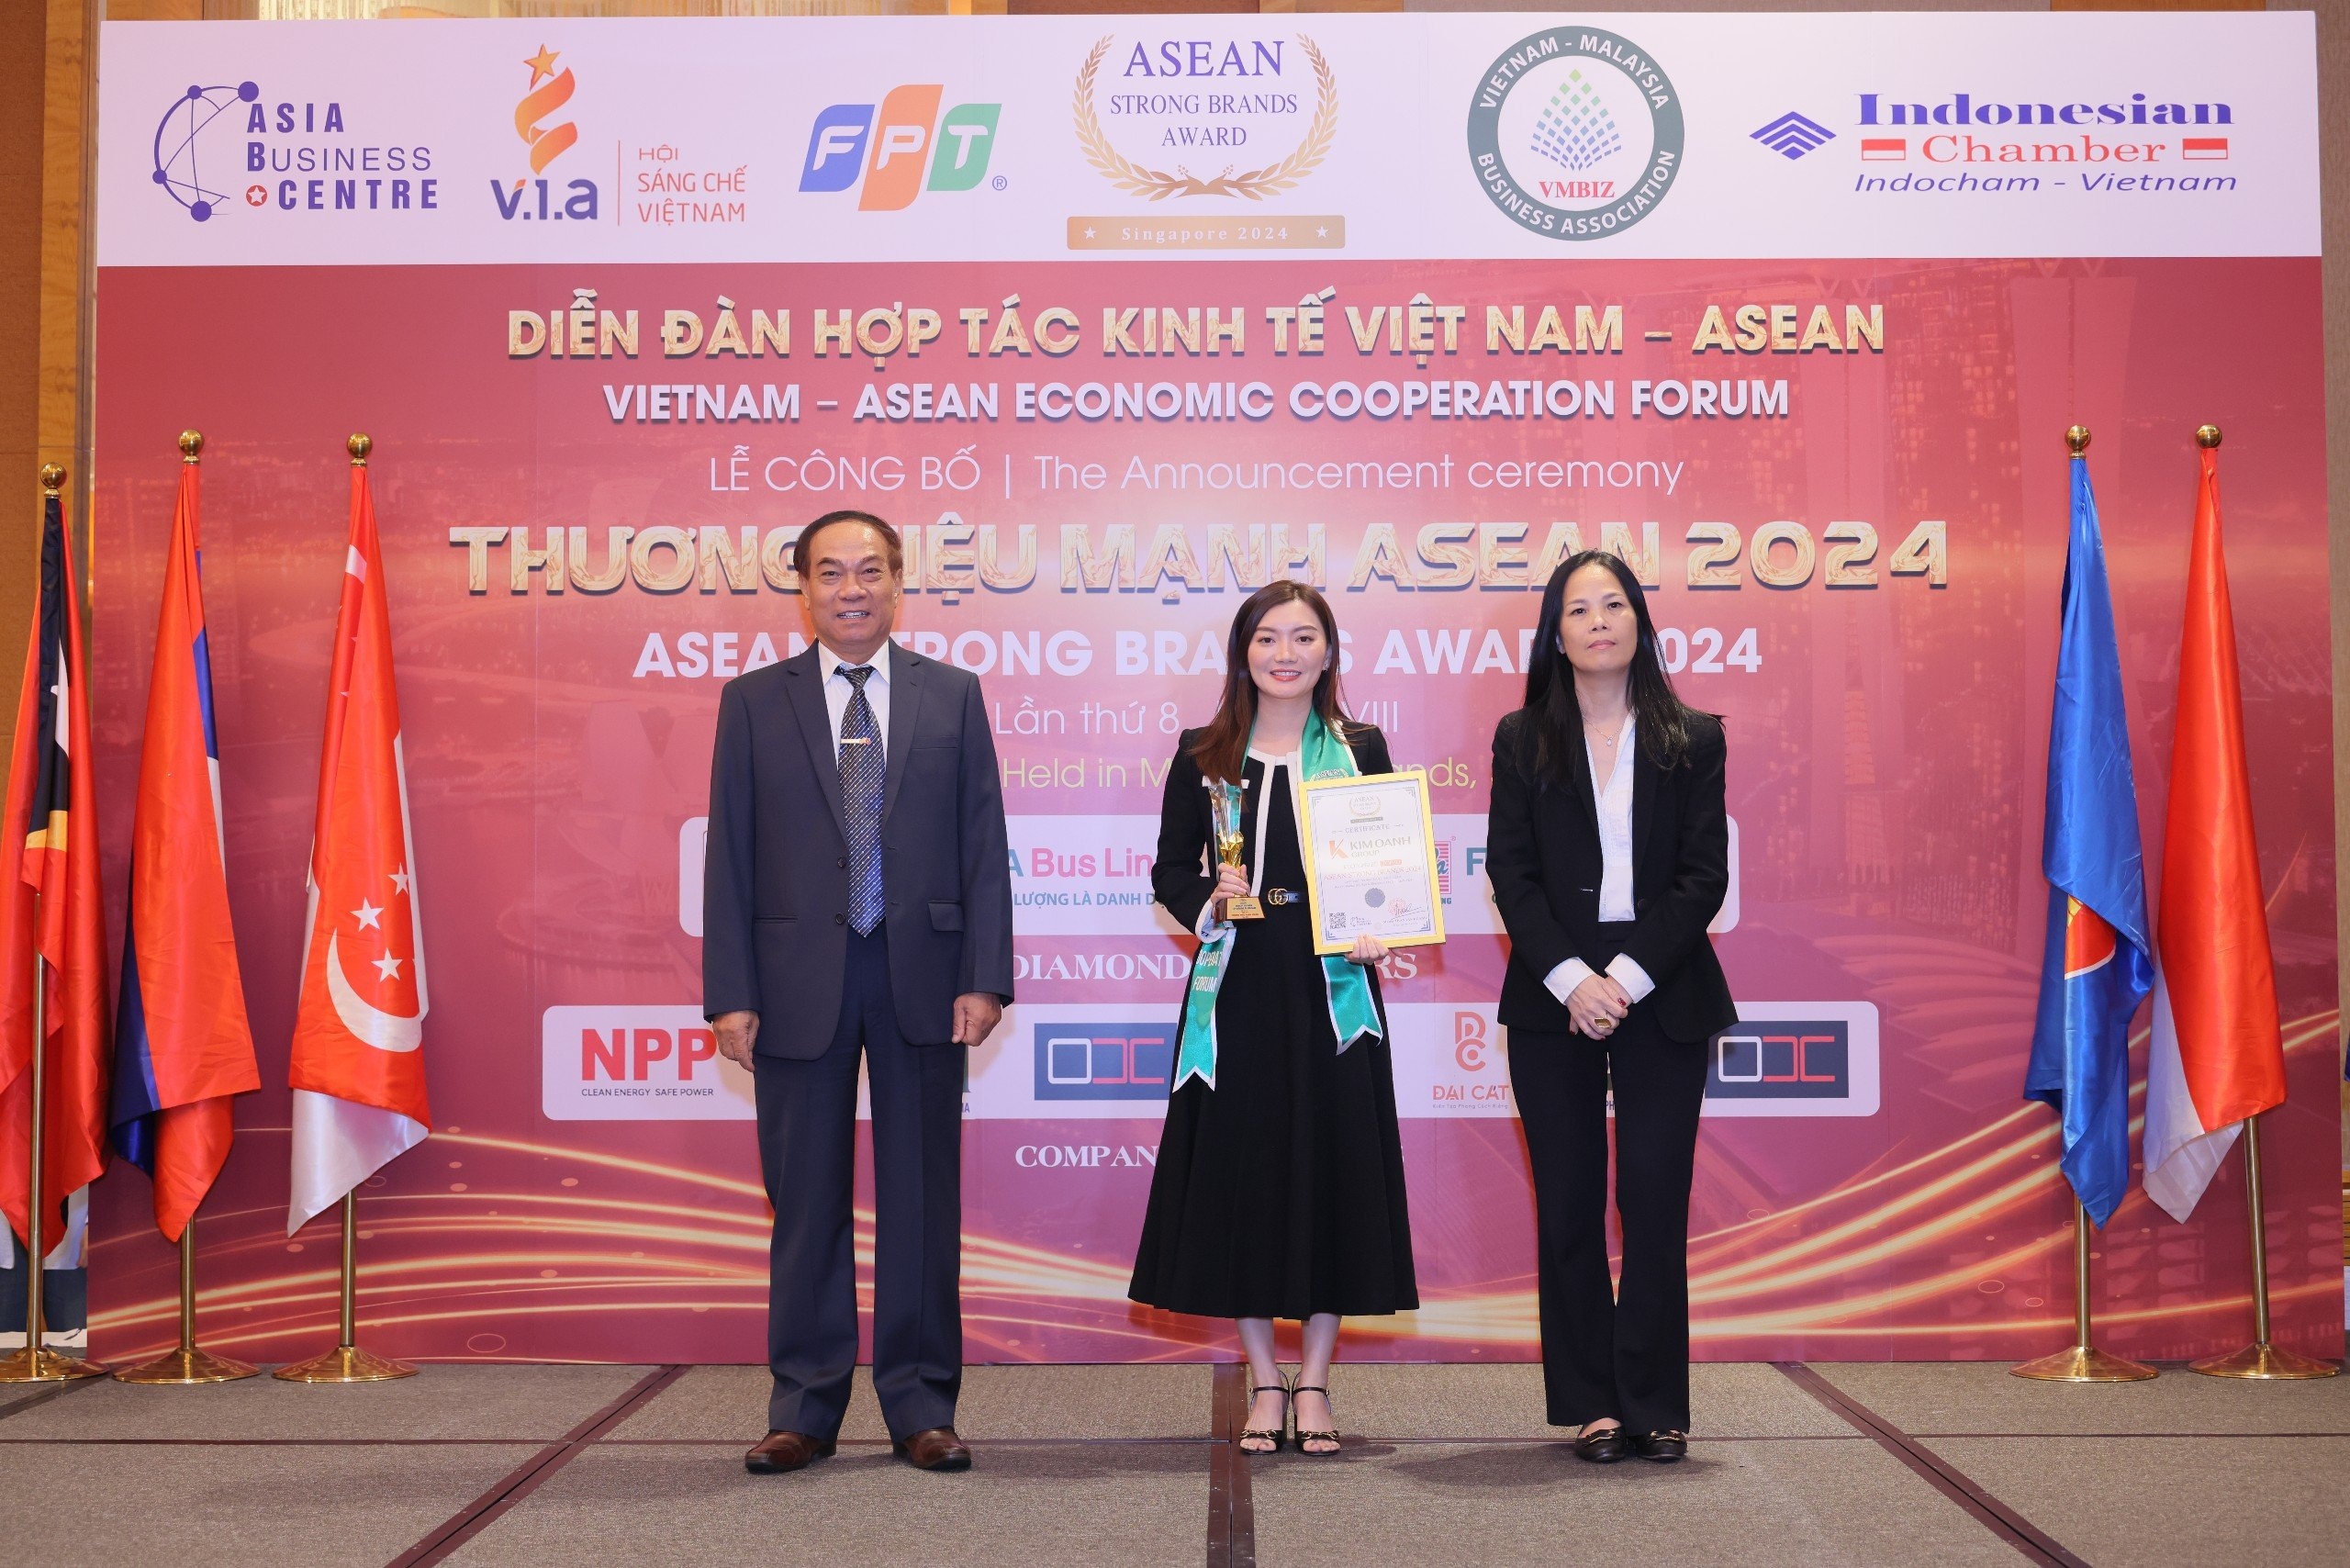 Kim Oanh Group lập hattrick giải thưởng tại ASEAN Strong Brands Award - ảnh 2